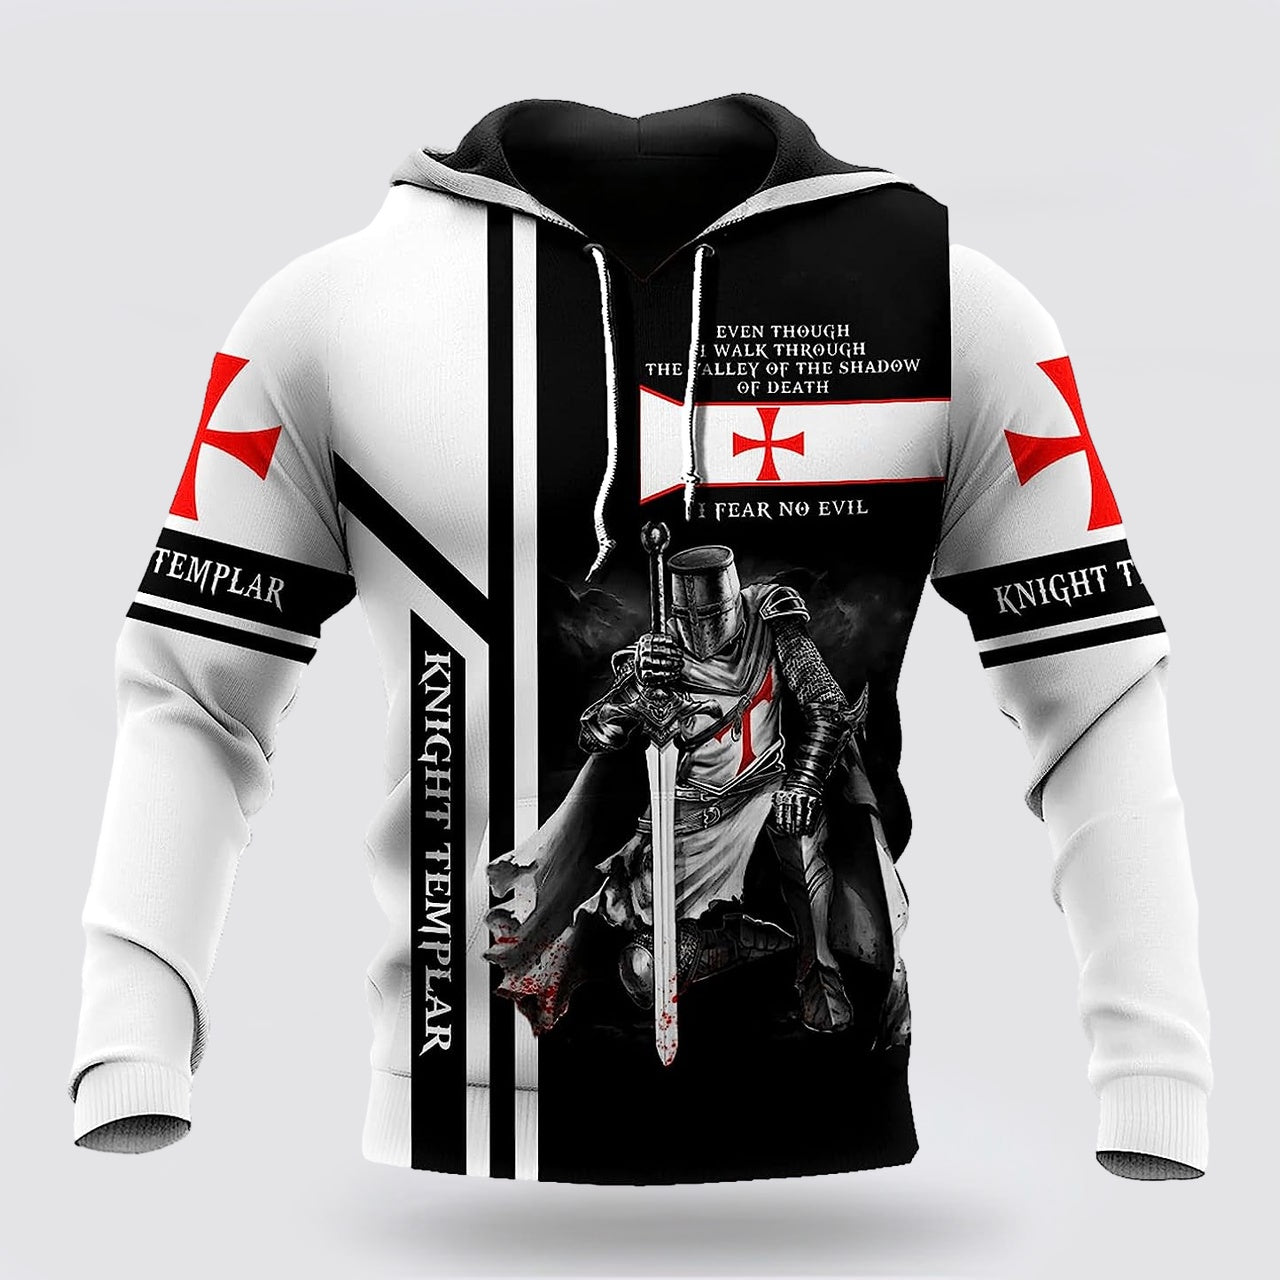 Brave Knight Templar 3d Hoodies For Women Men - Christian Apparel Hoodies